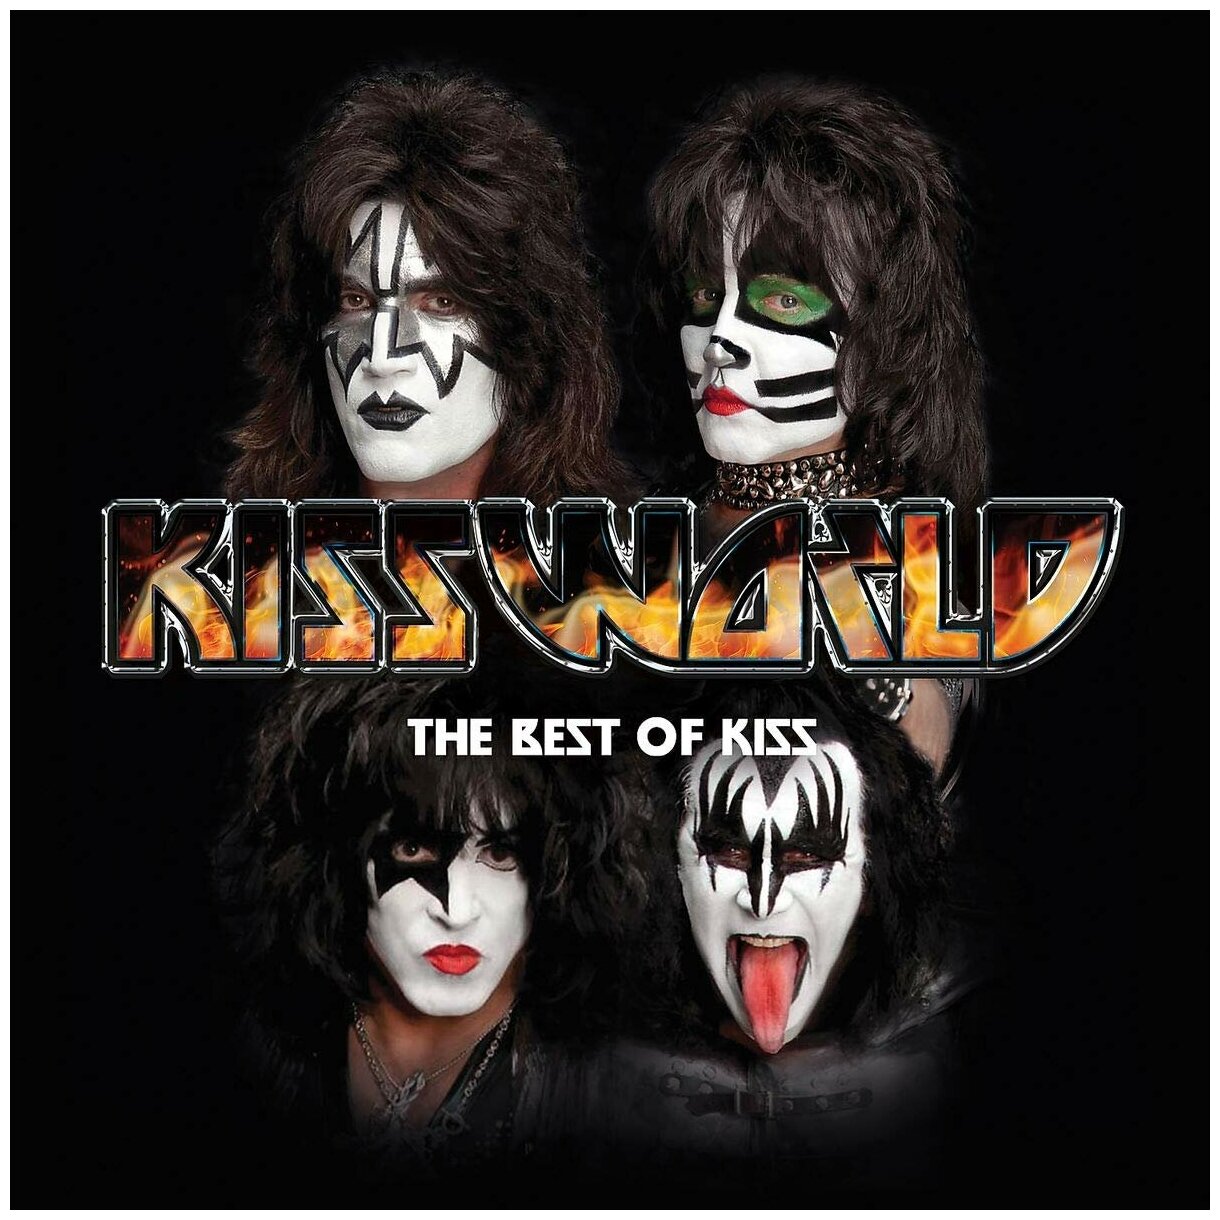 Виниловая пластинка Kiss. Kissworld - The Best Of Kiss (2 LP)